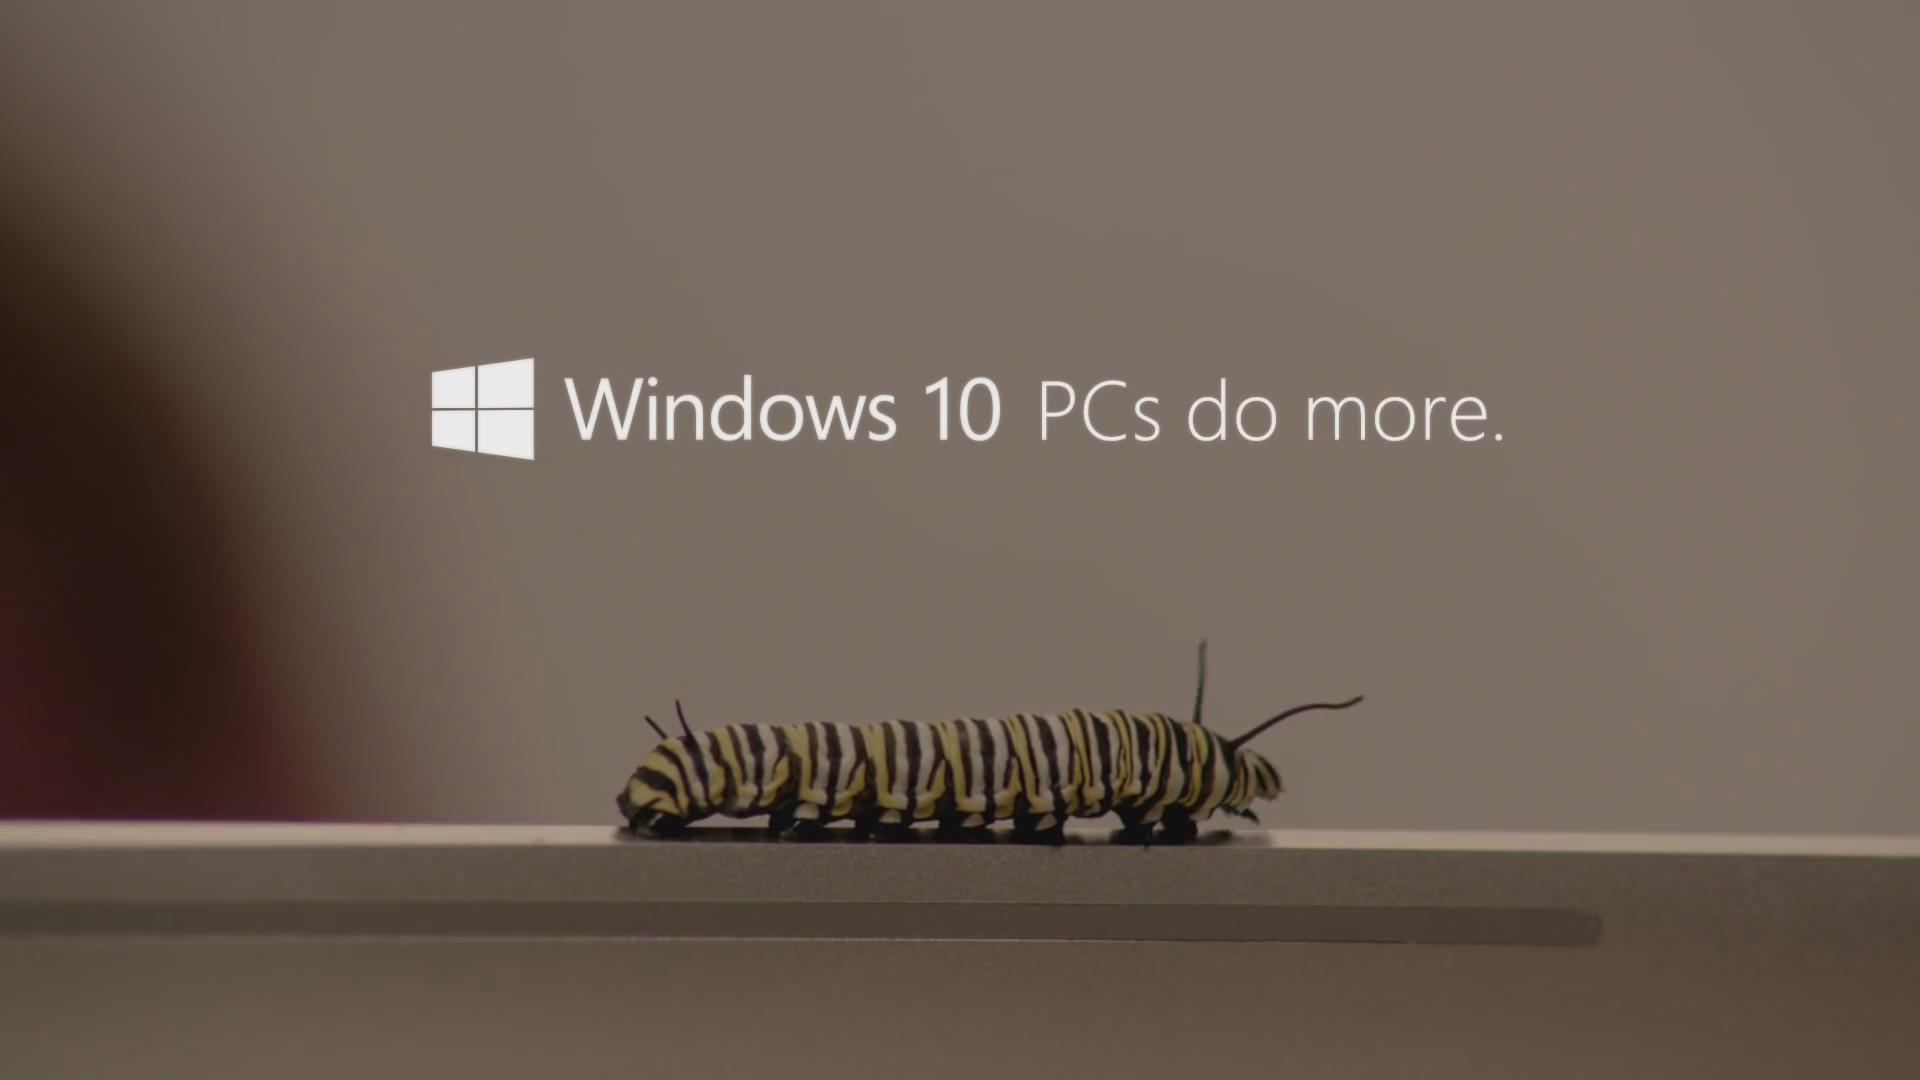 微软新广告剑指苹果:Win 10 PC可做的事情比M